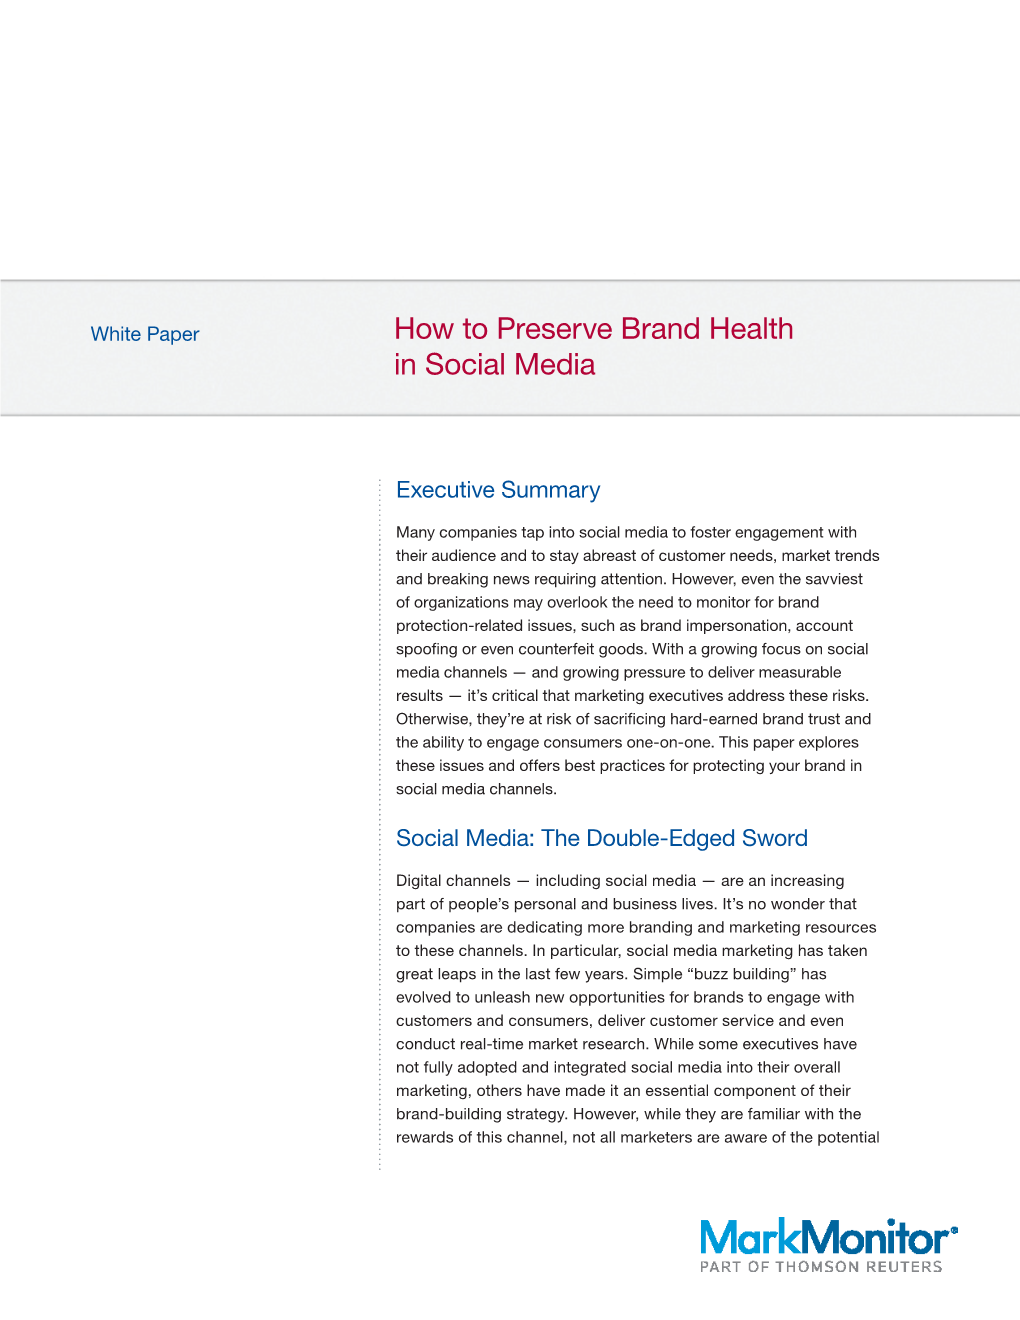 How to Preserve Brand Health in Social Media